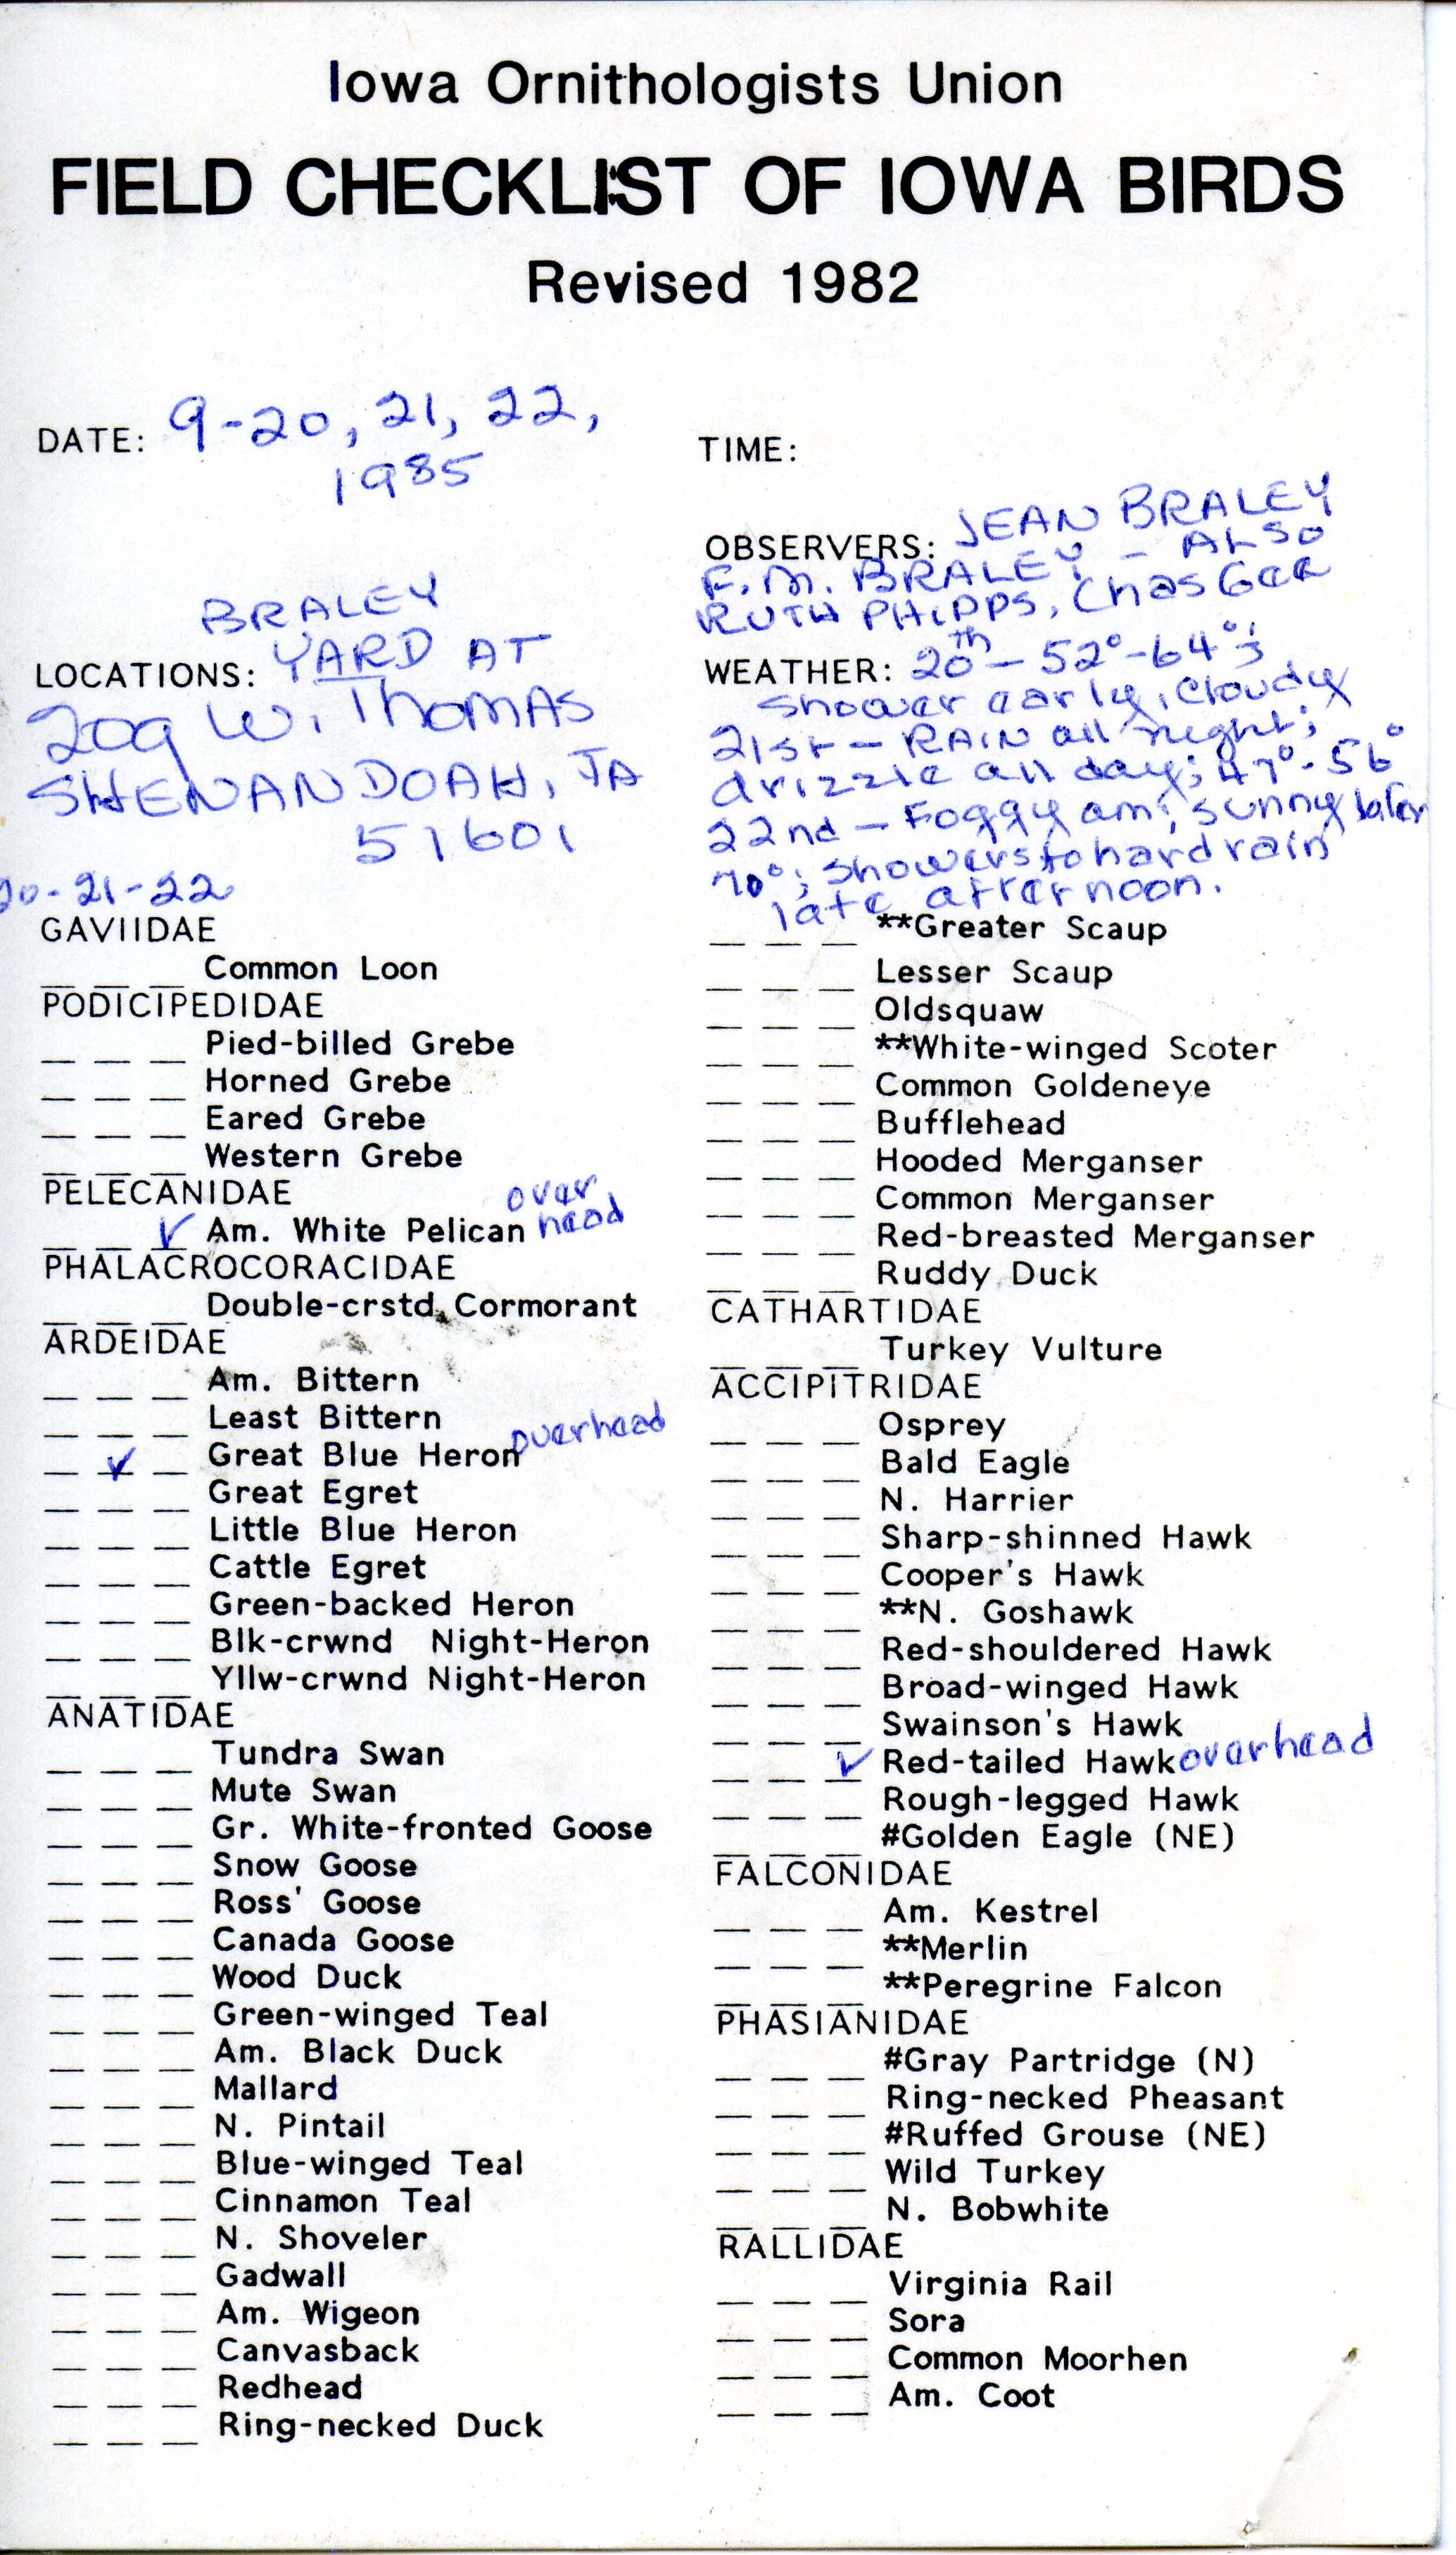 Field checklist of Iowa birds